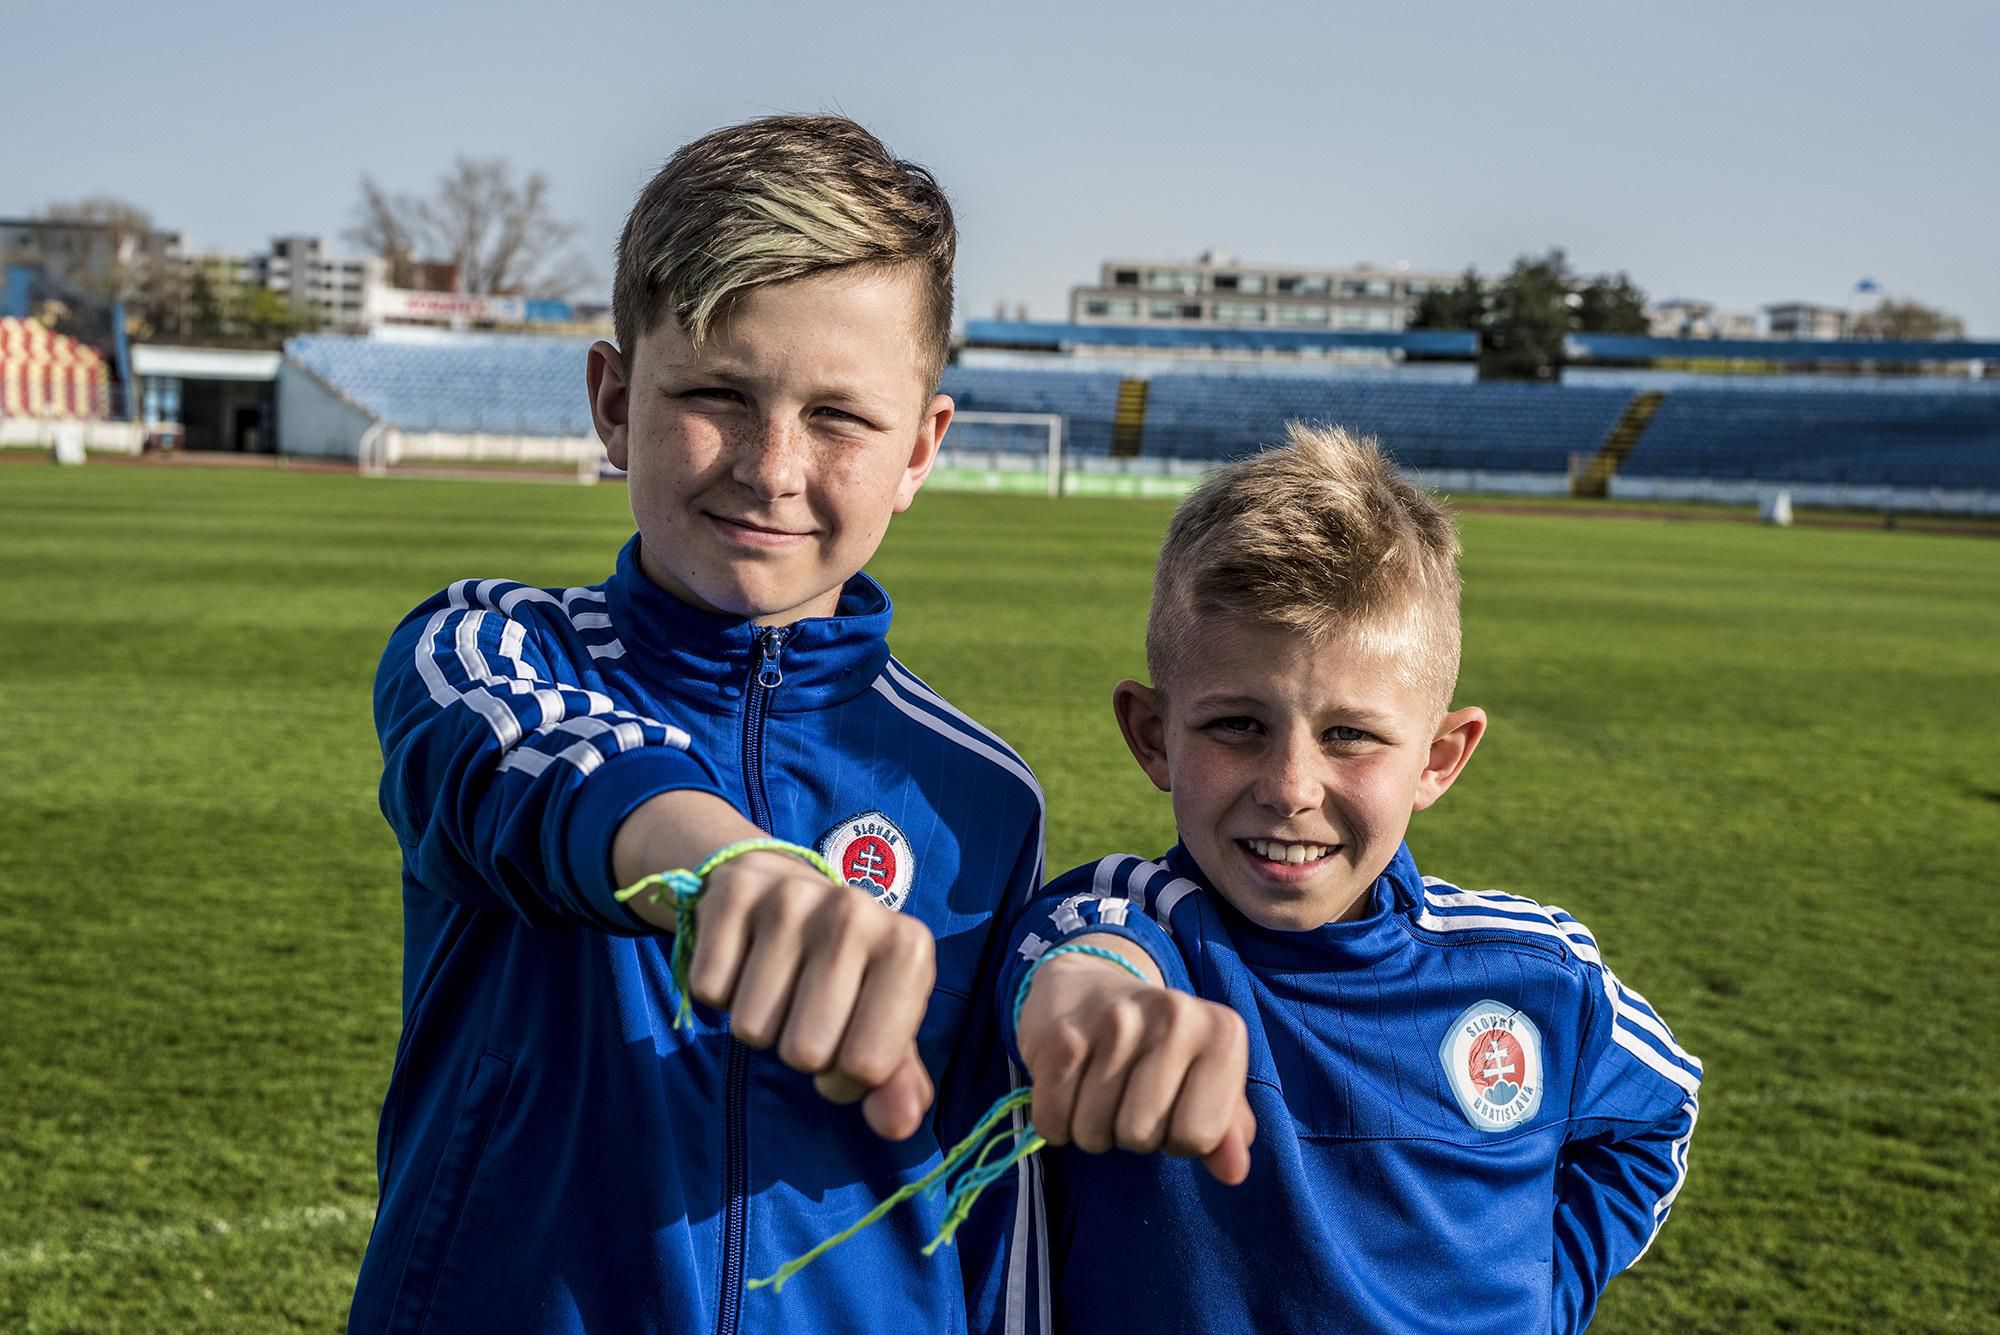 predstavenie dvoch mladých futbalistov, ktorí budú reprezentovať Slovensko v rámci projektu Futbal pre priateľstvo